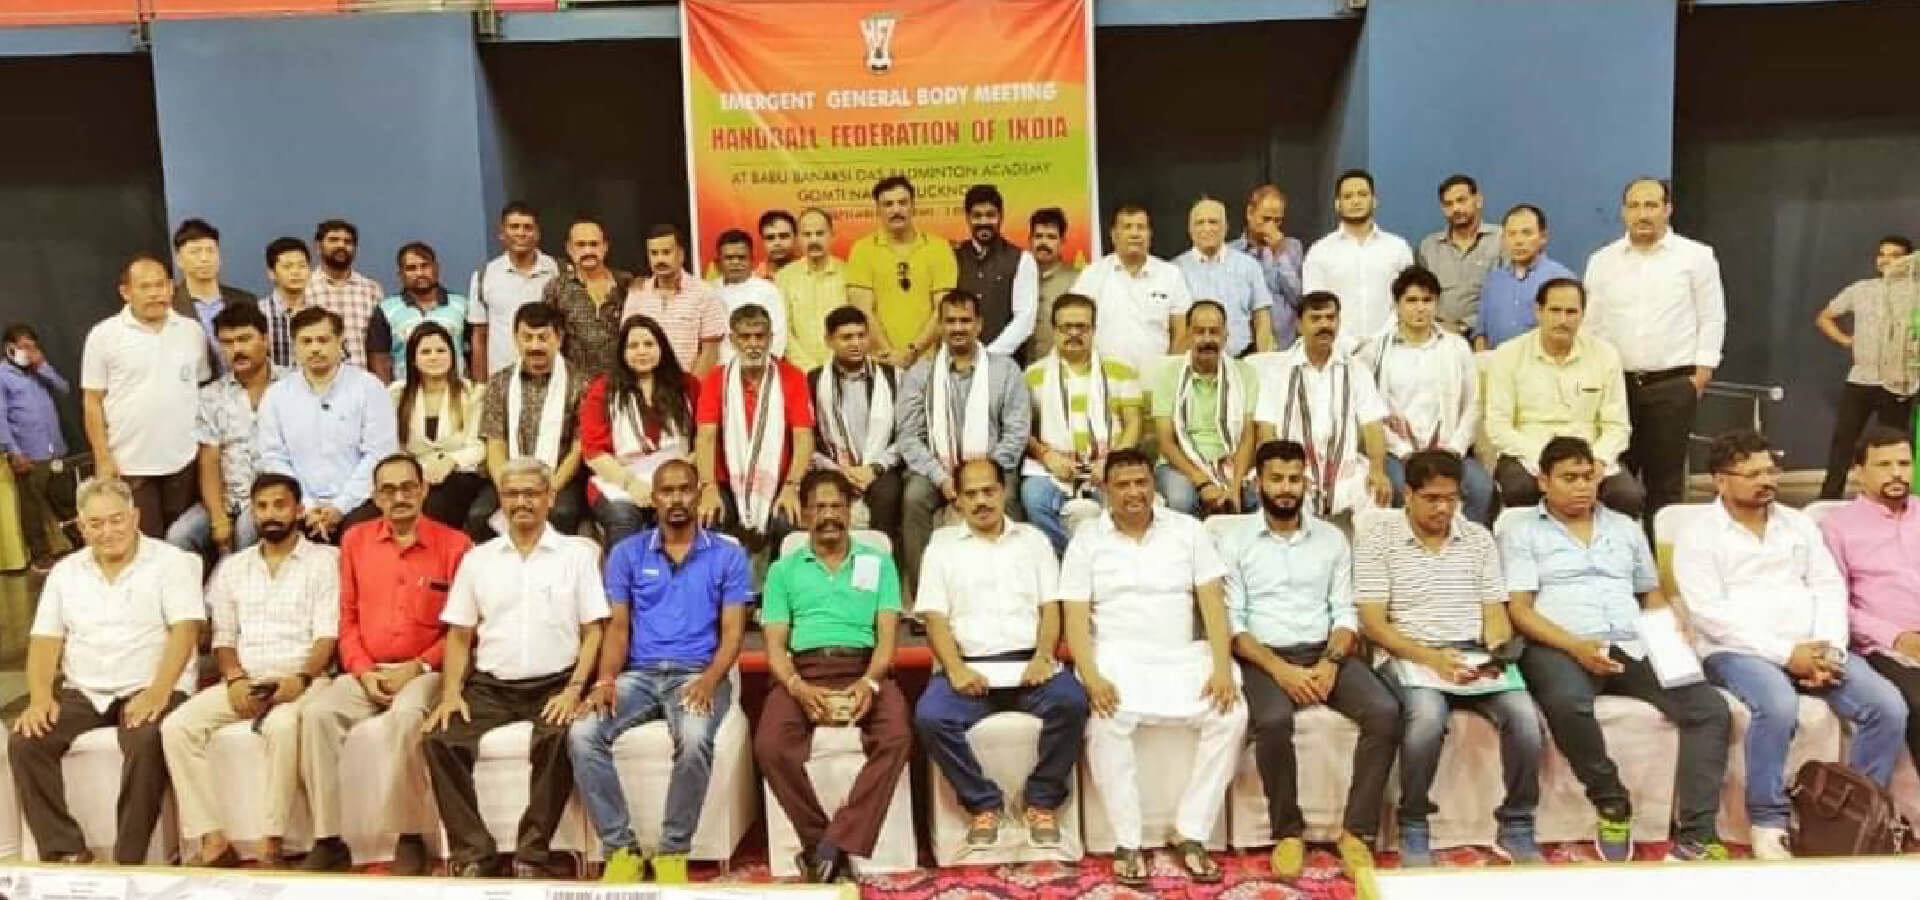 Handball Federation of India crisis resolved, says President Jaganmohan Rao